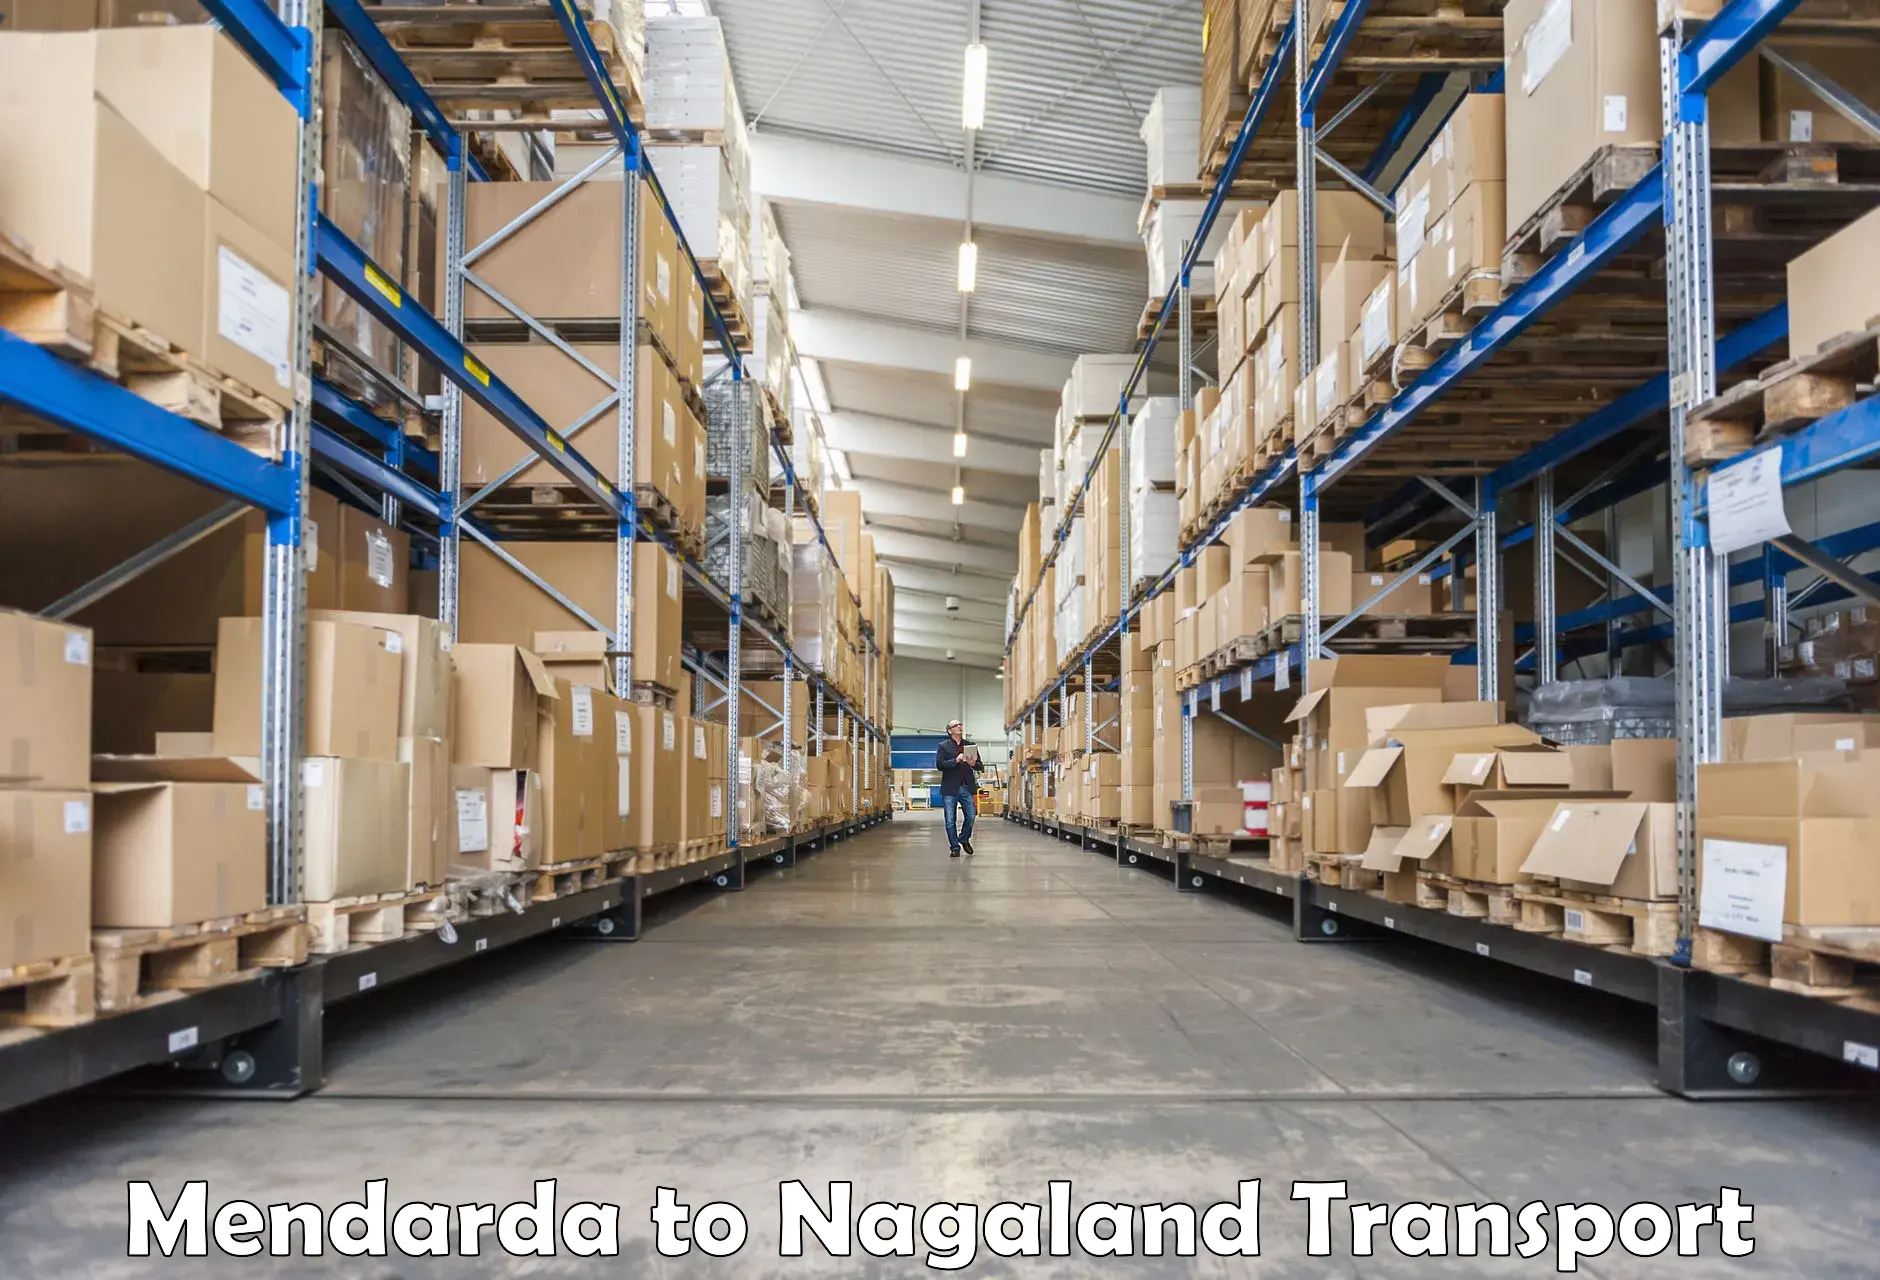 Road transport online services Mendarda to NIT Nagaland